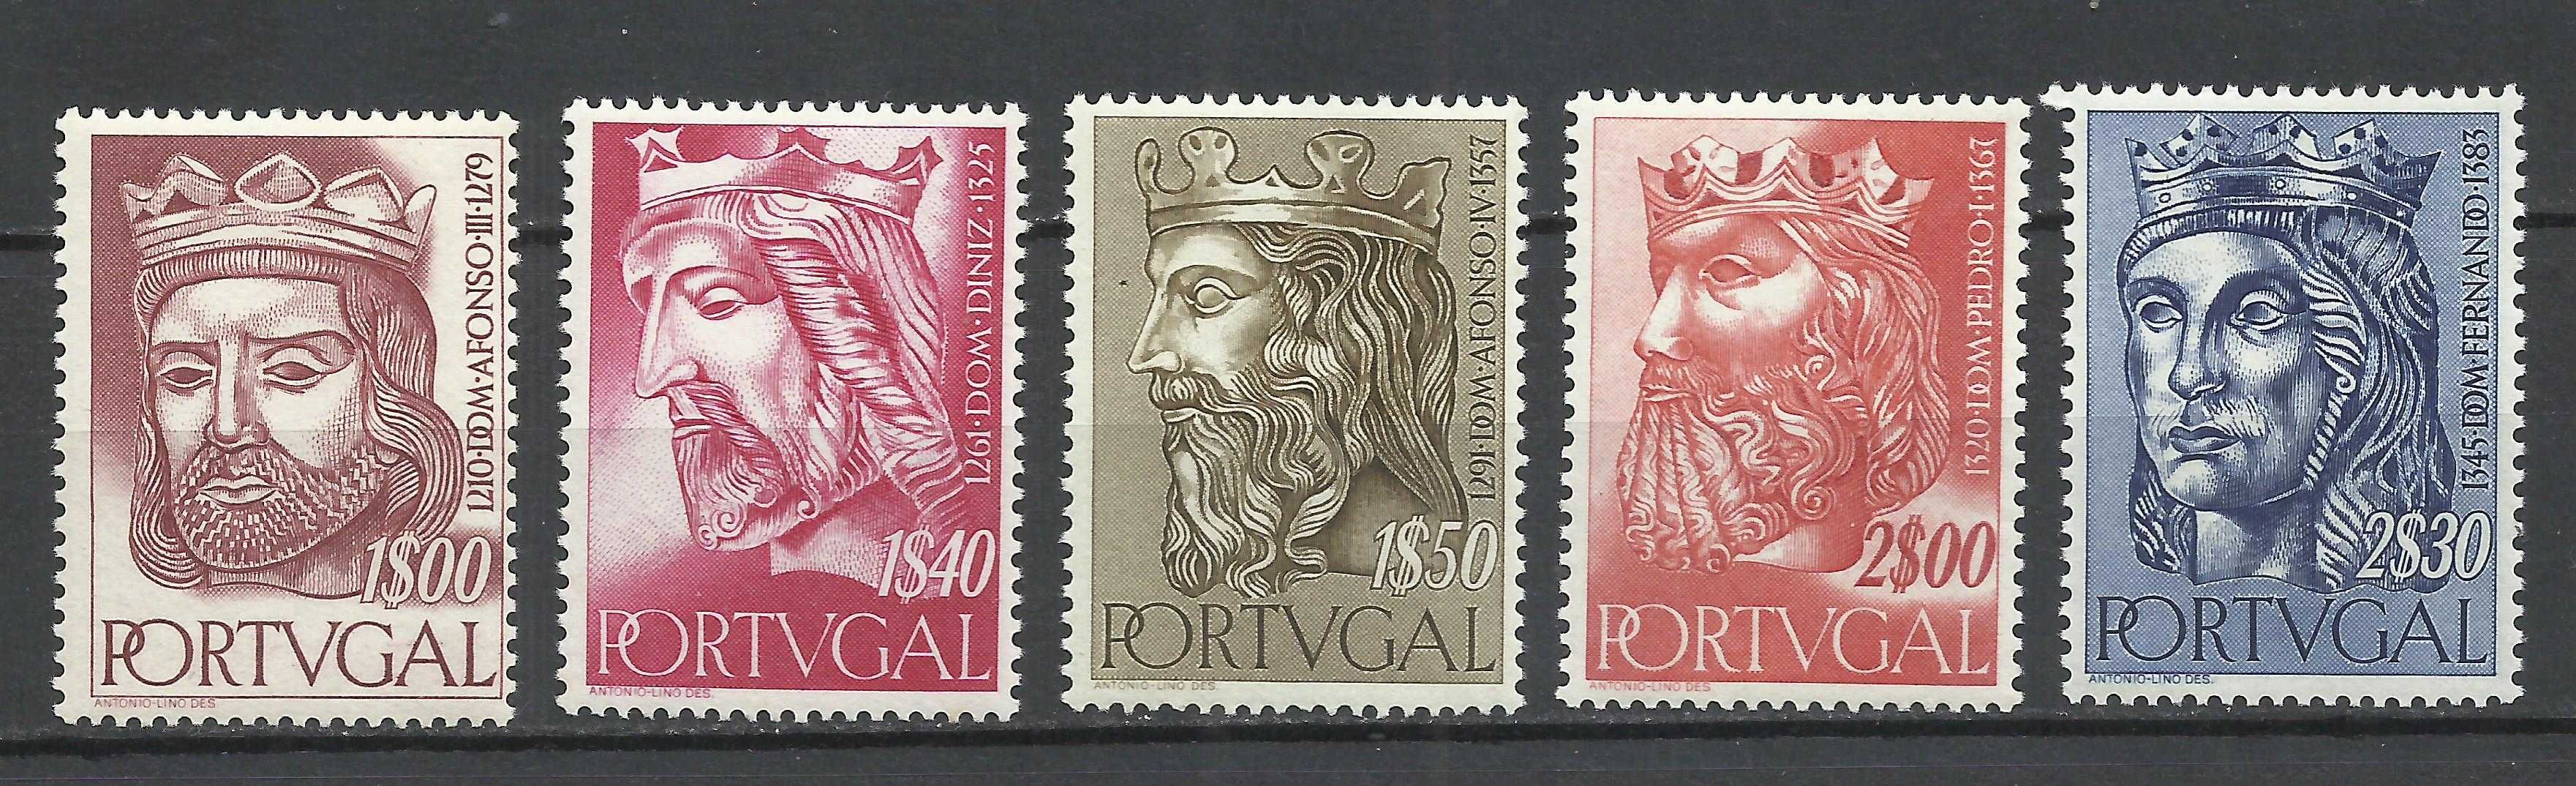 Selos portugueses – Série Reis de Portugal 1ª Dinastia – Novos